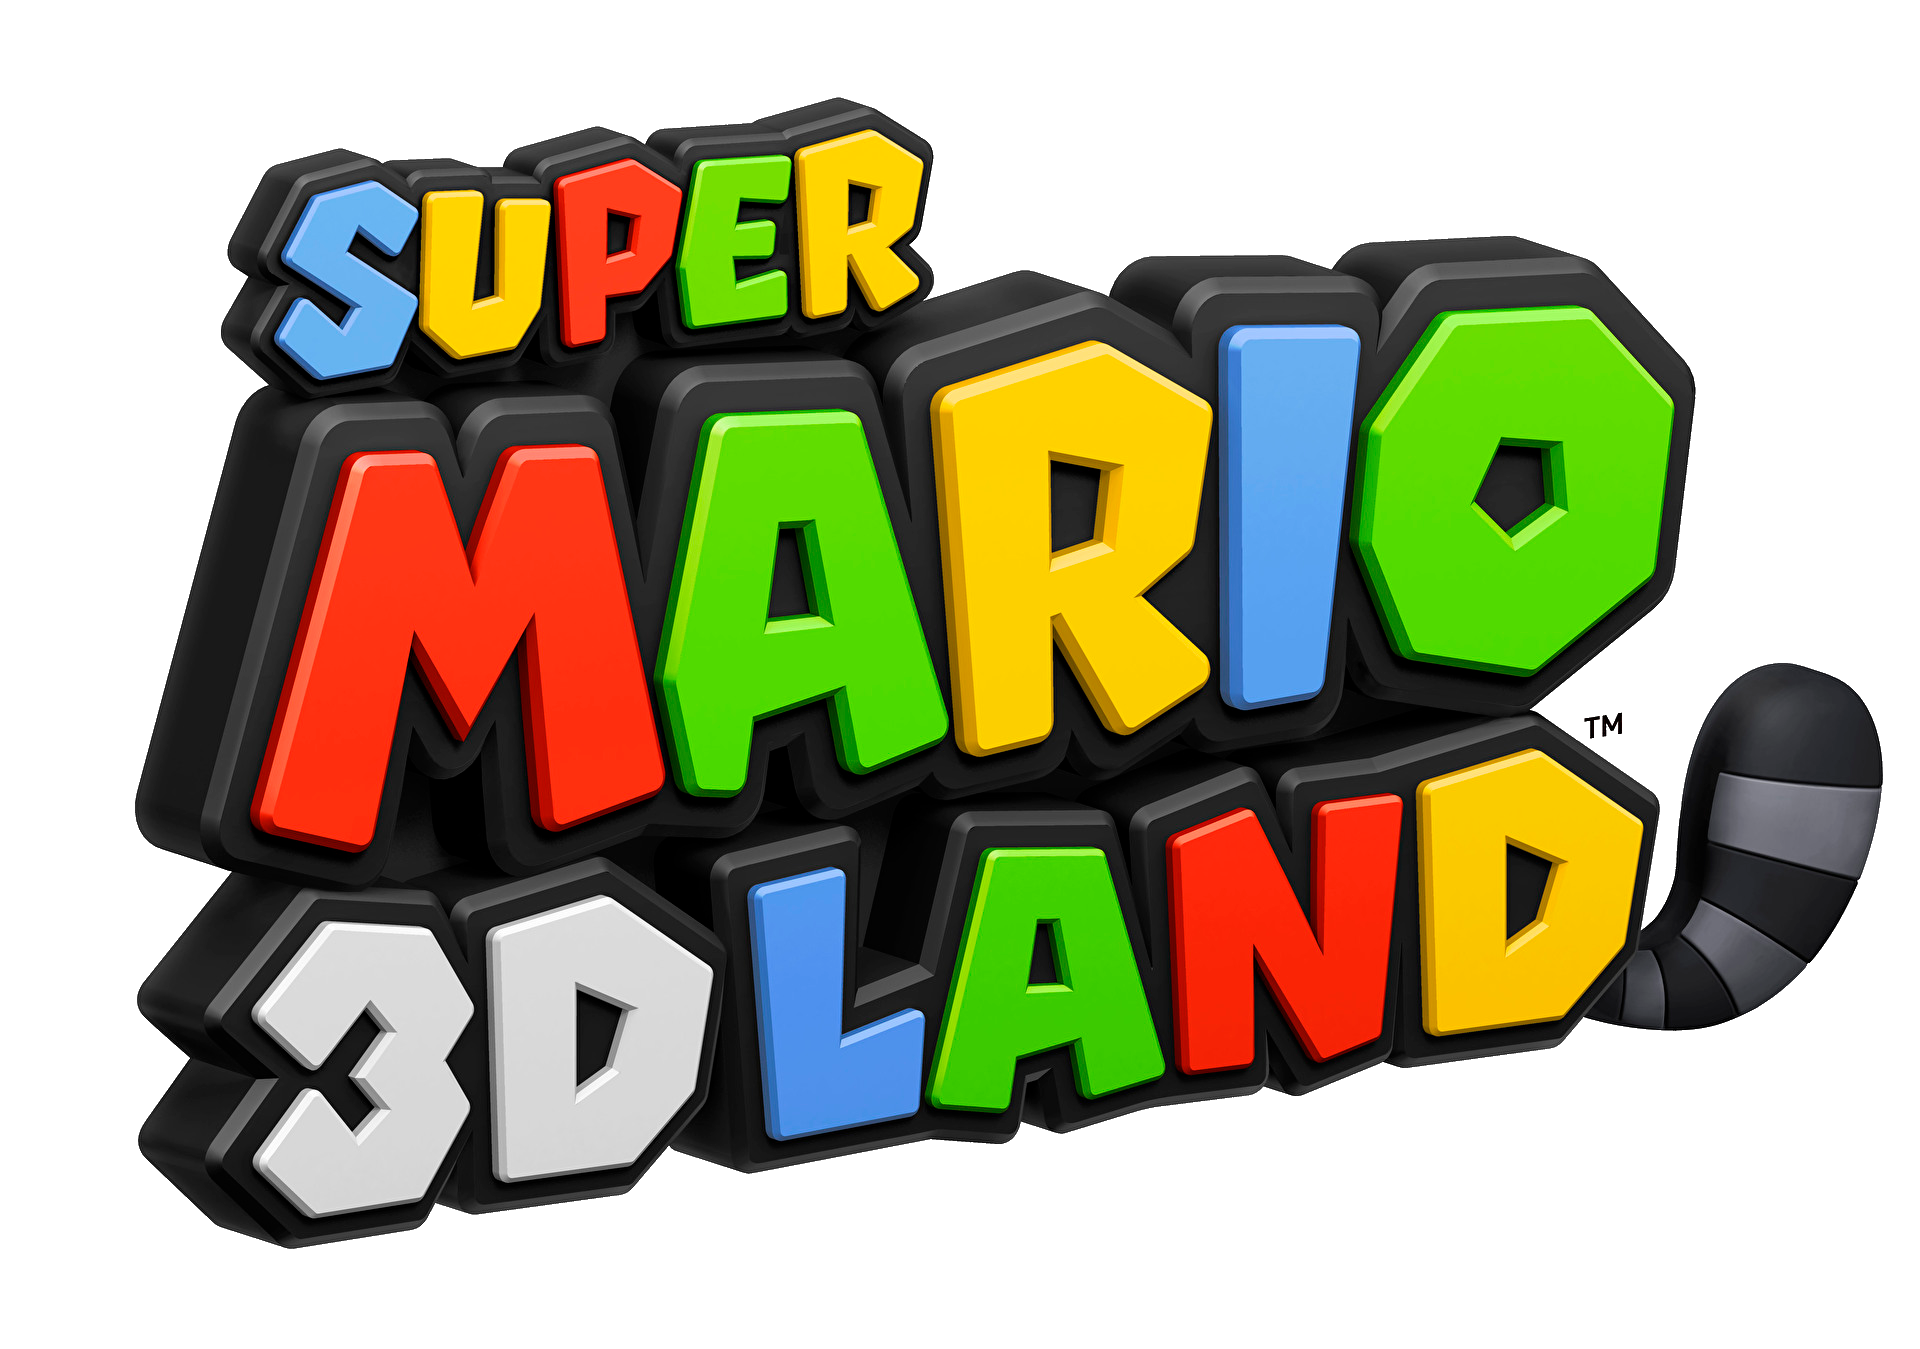 Nintendo's latest Super Mario game were amongst those revealed